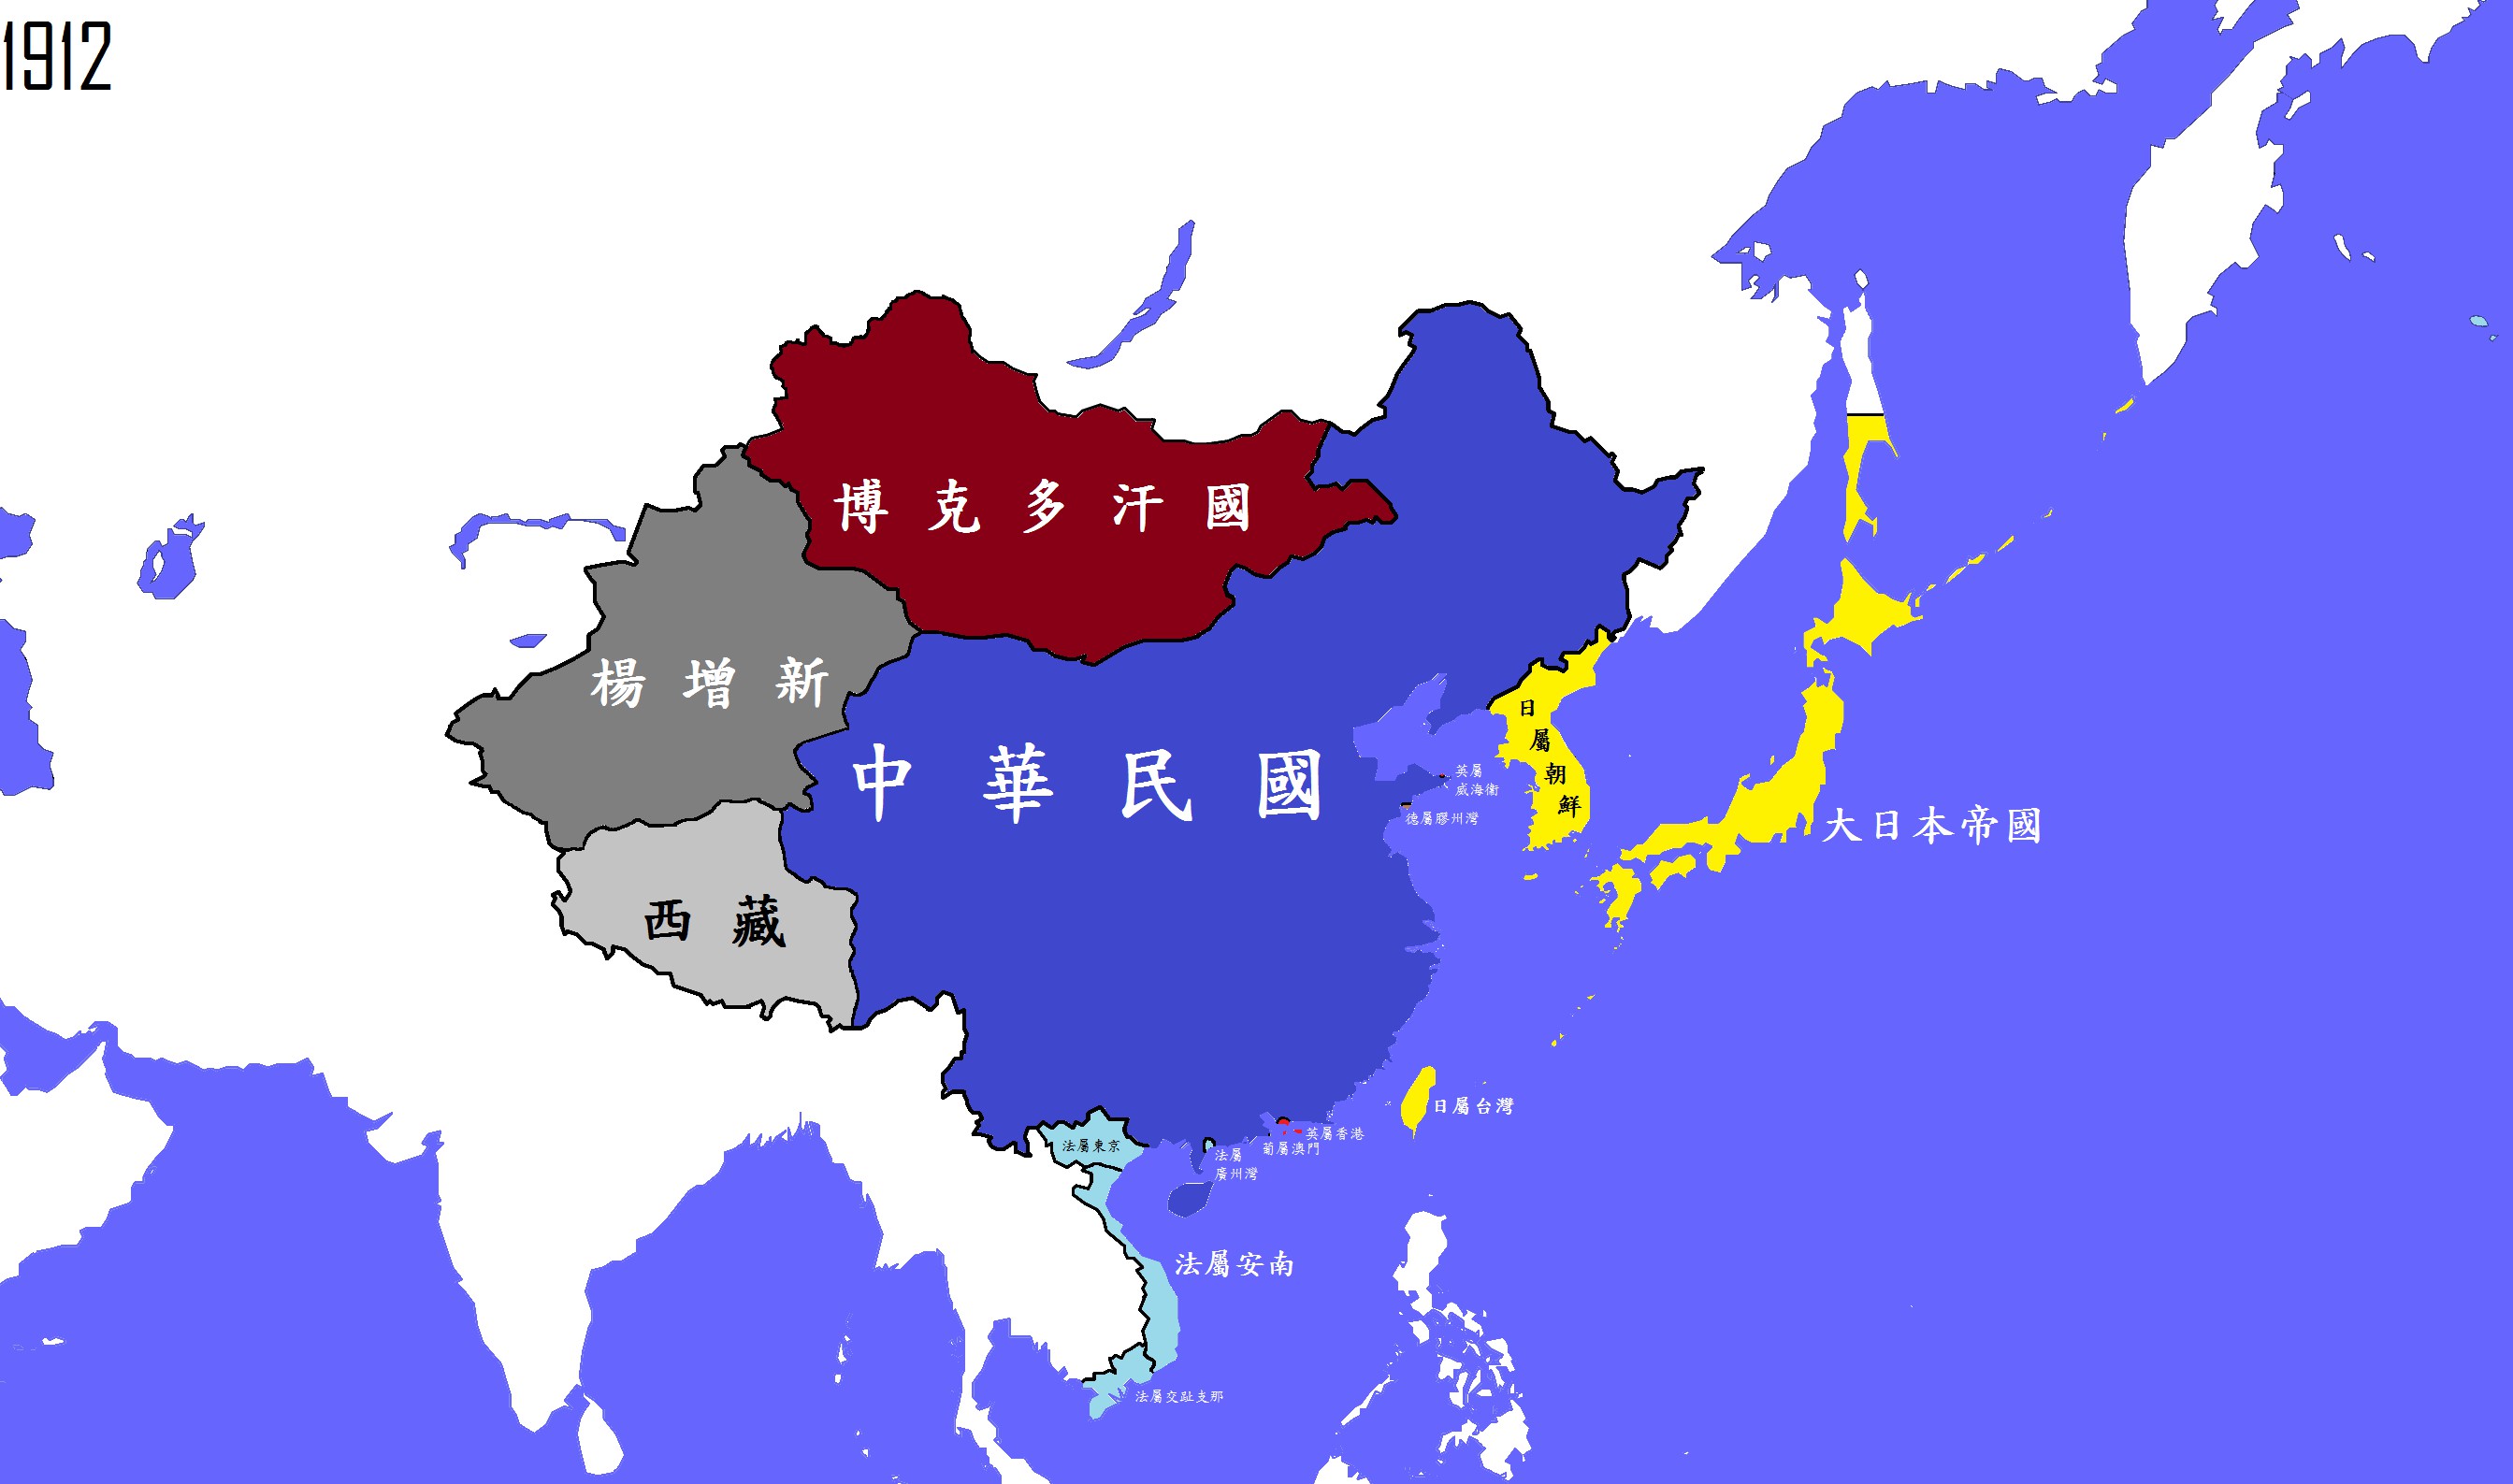 中国地图 中国 中国疆域 >> 公元1912年(中华民国)图片